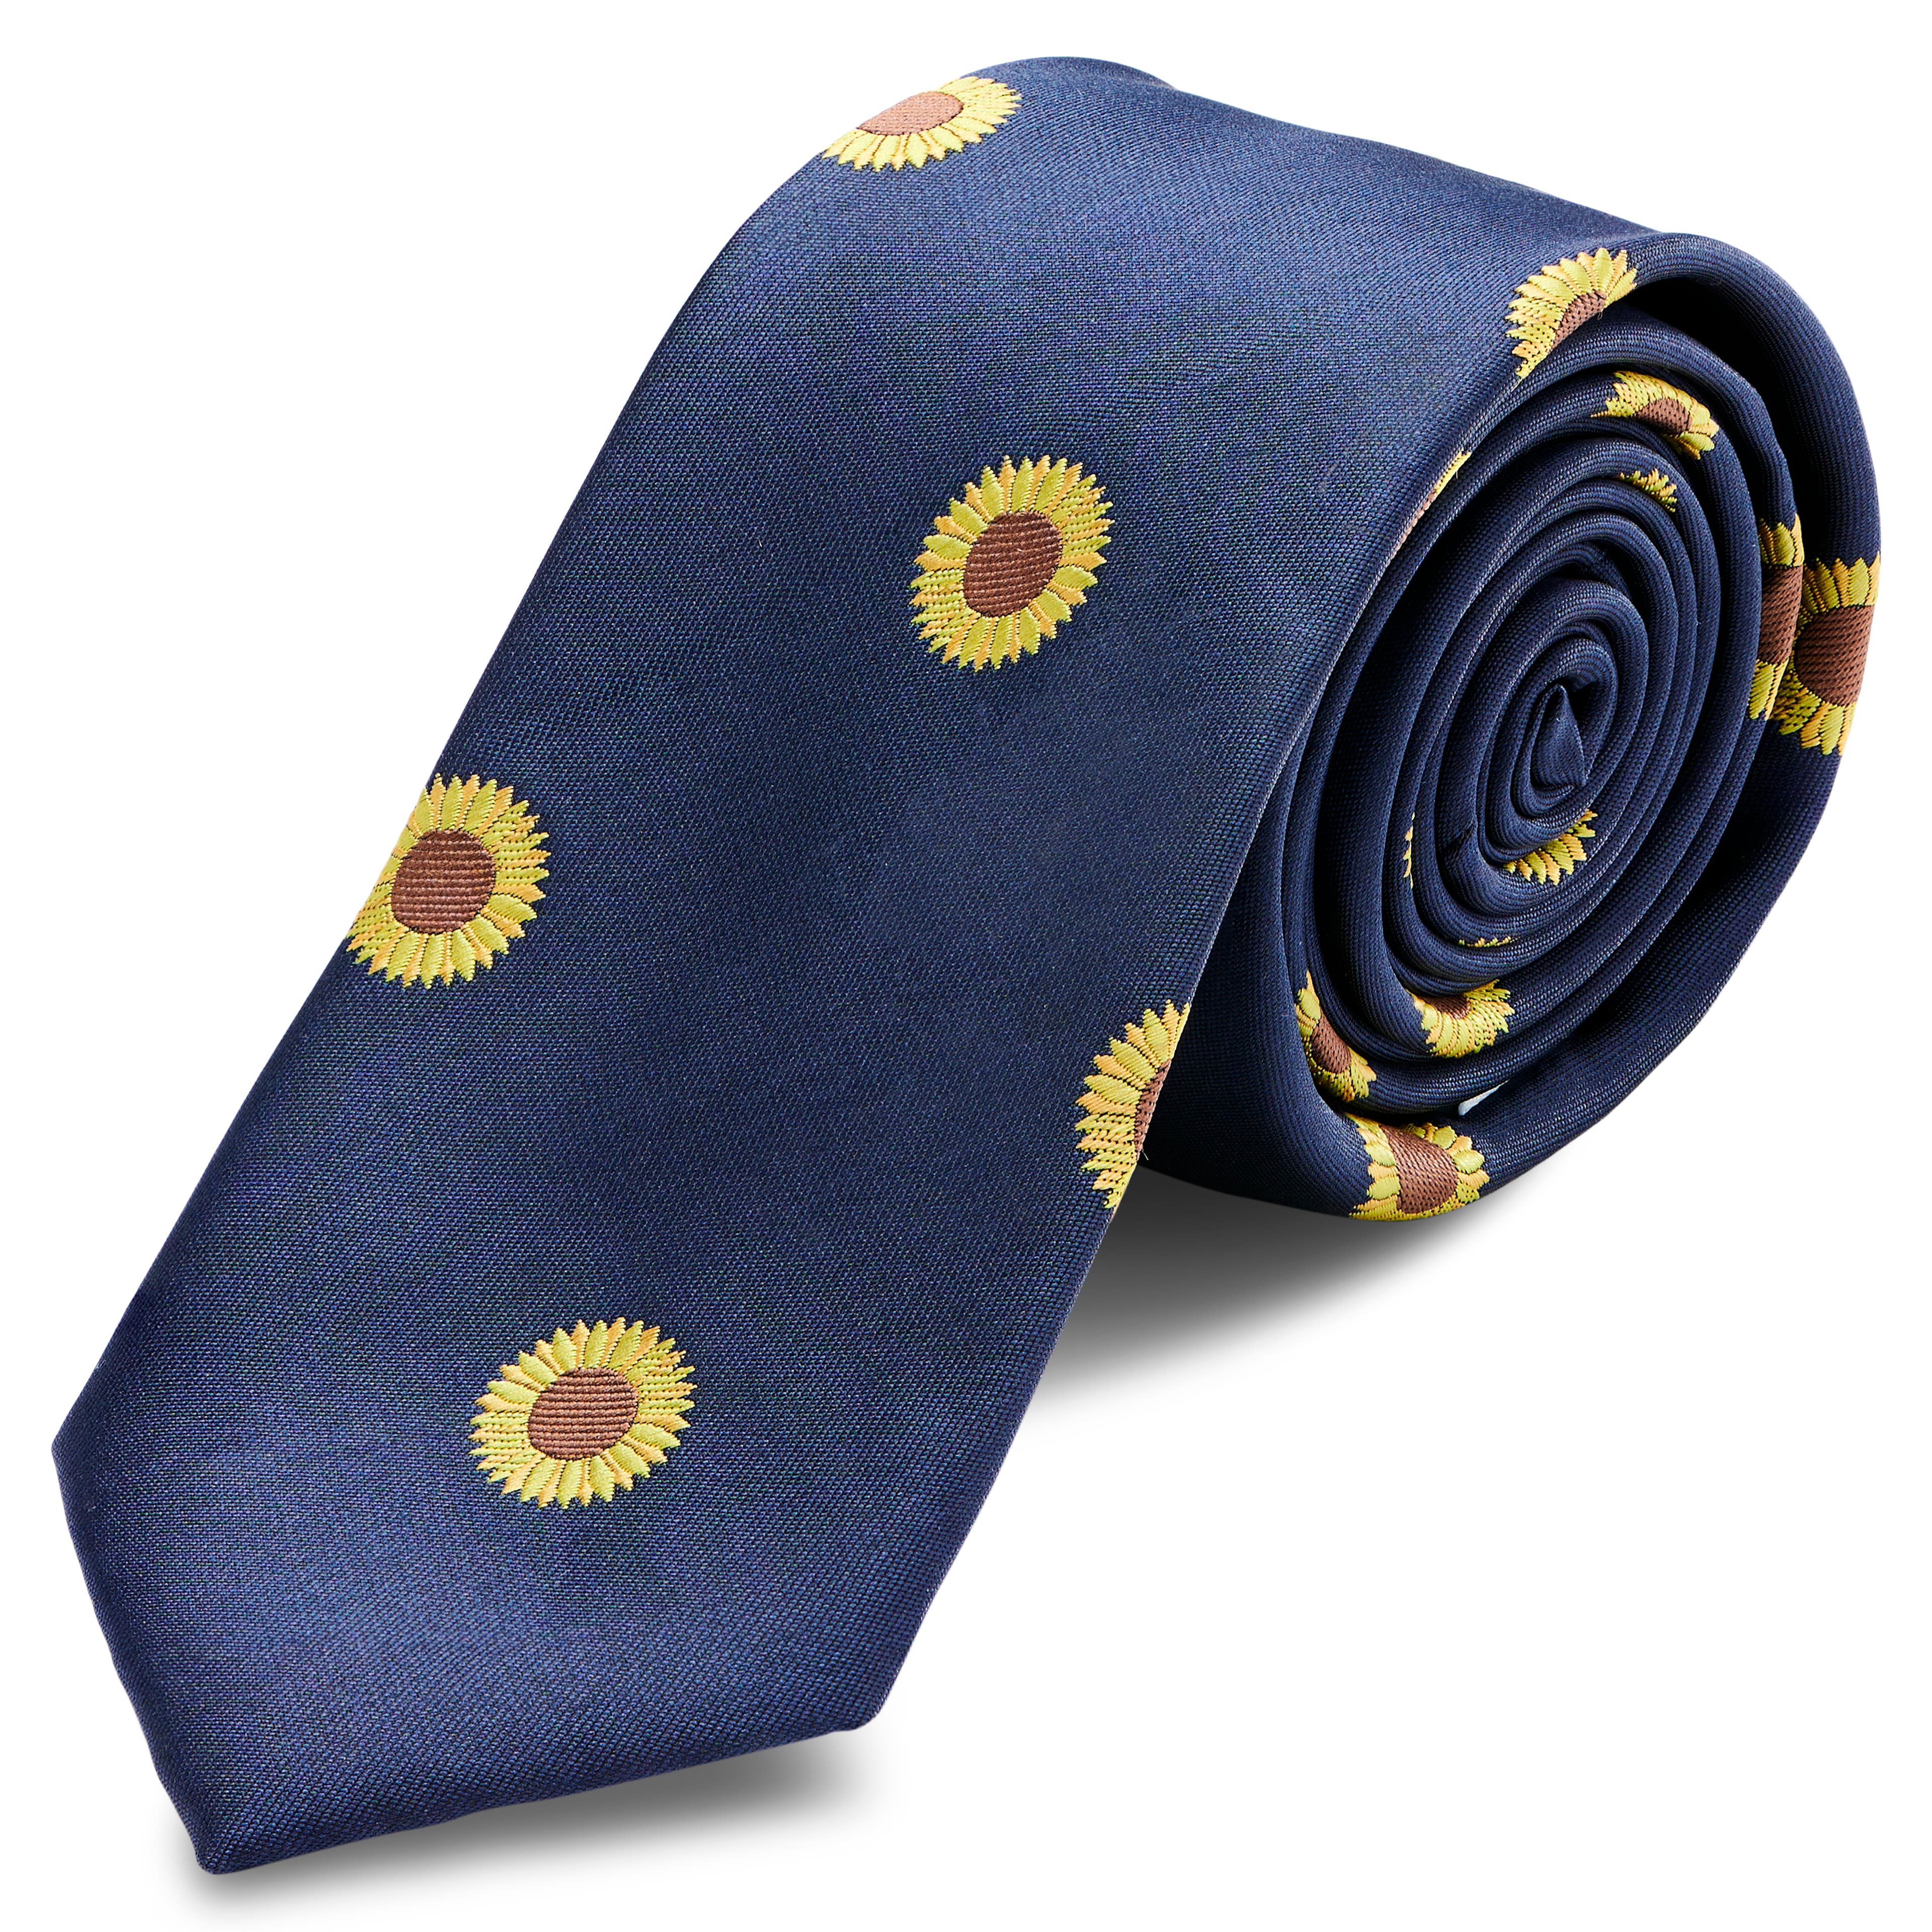 Tummansininen kapea auringonkukka-solmio